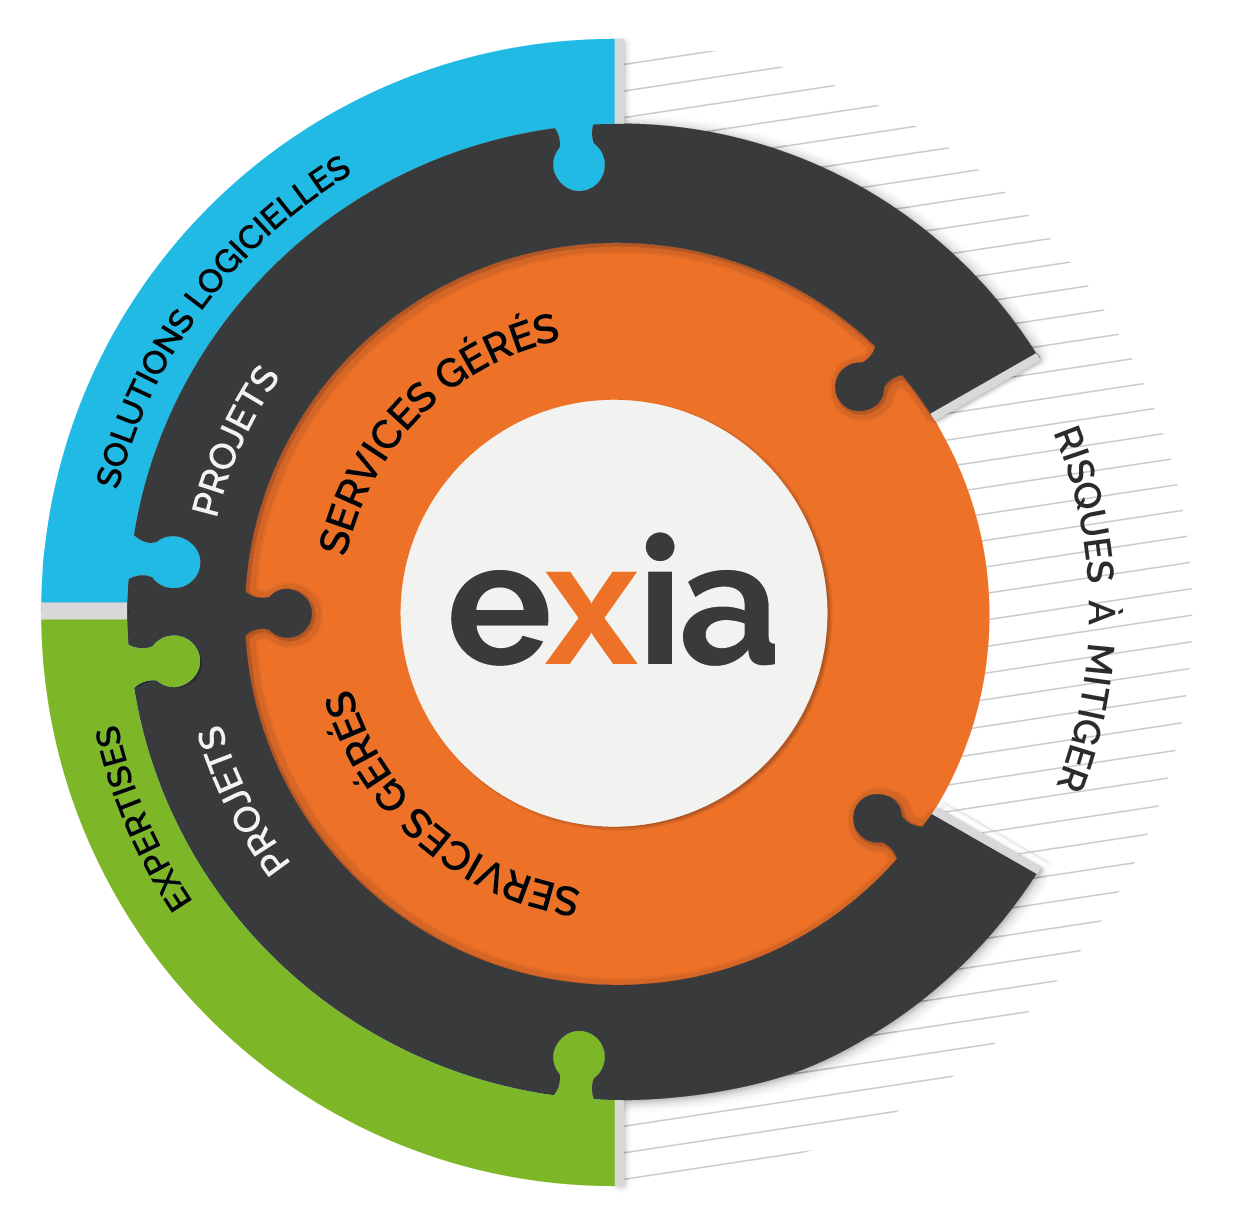 EXIA's services